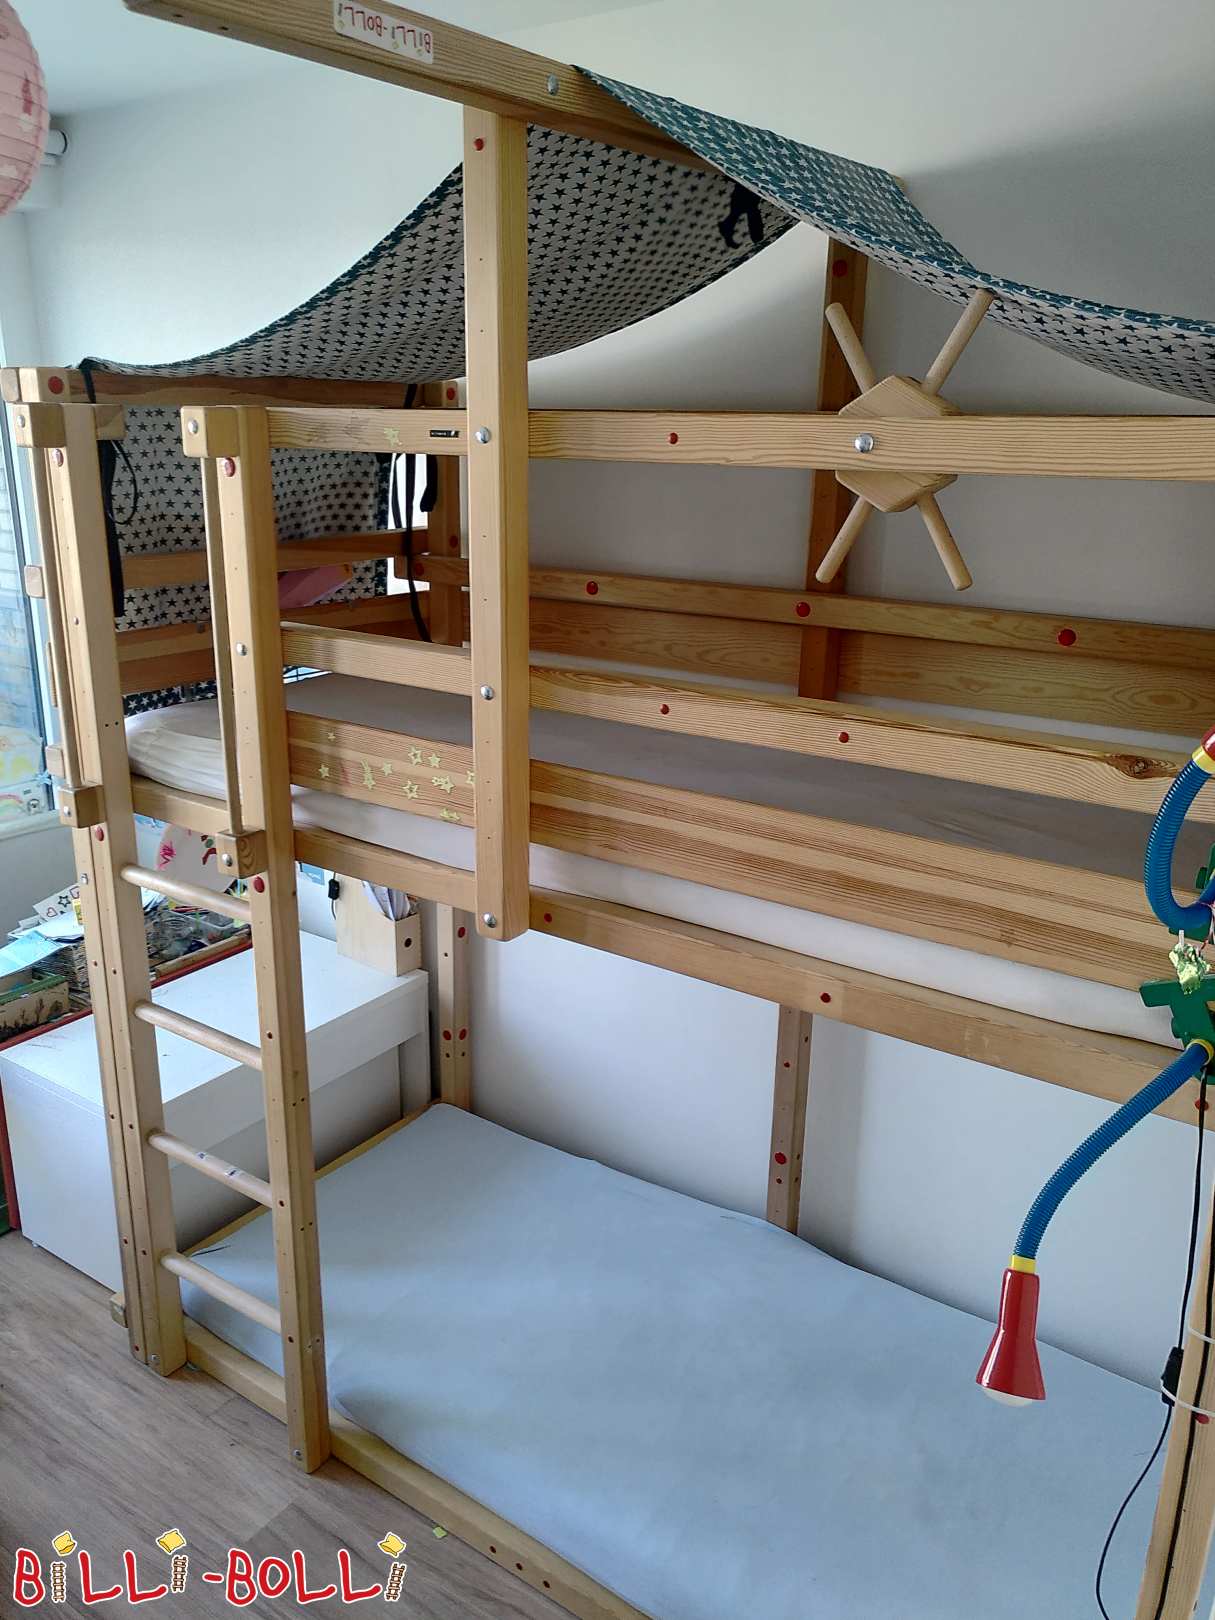 Auganti palėpės lova su papildomu miego lygiu ir baldakimu (Kategorija: Naudojami priedai / prailginimo dalys)